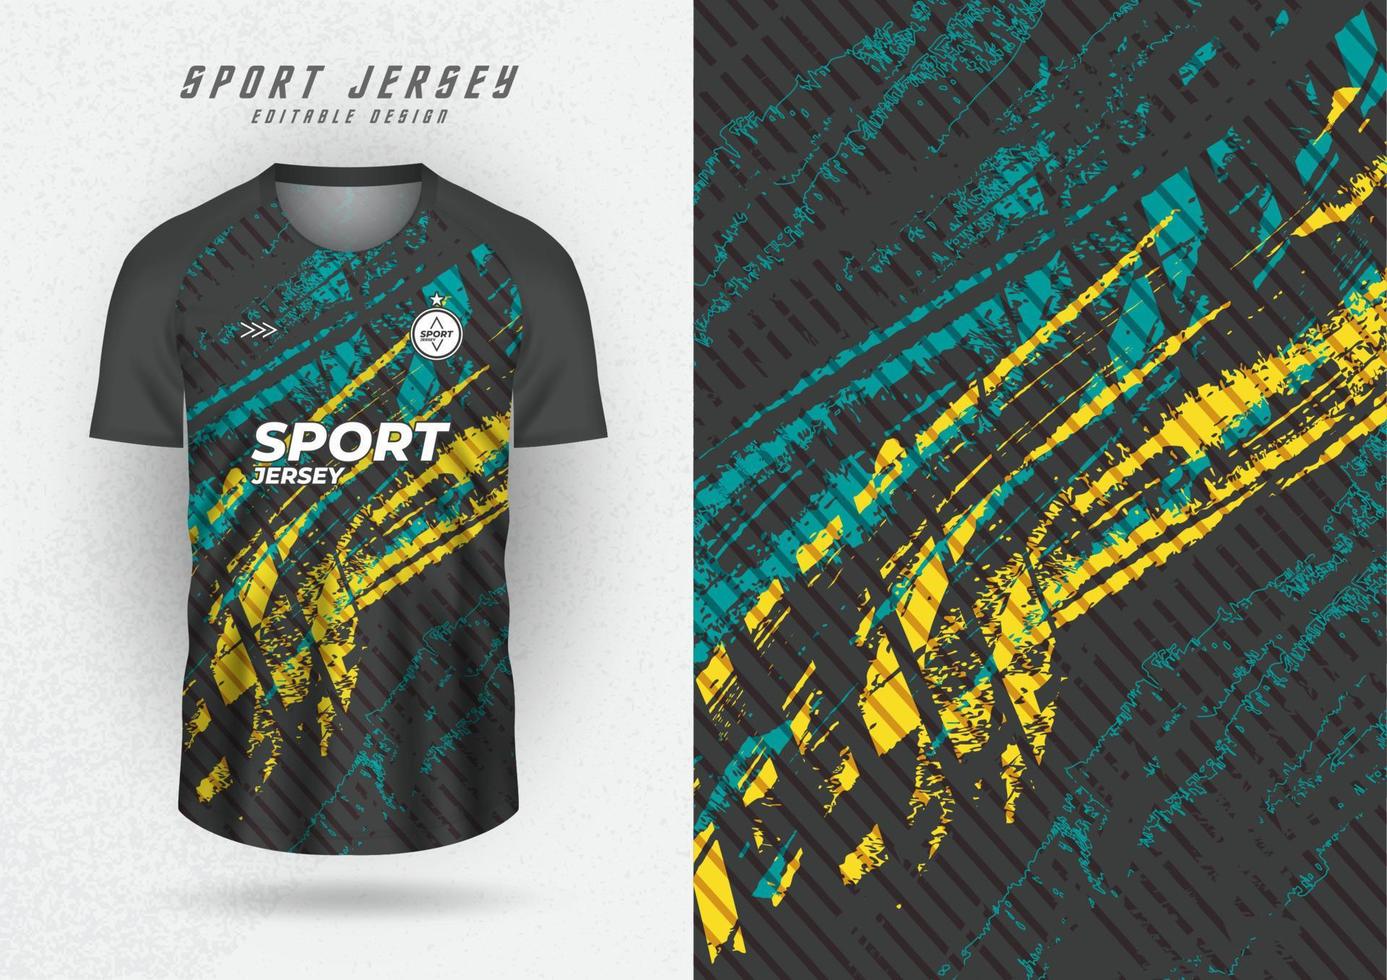 maqueta de fondo para camisetas de equipos deportivos, camisetas y camisetas para correr, fondo negro con rayas verdes y amarillas. vector